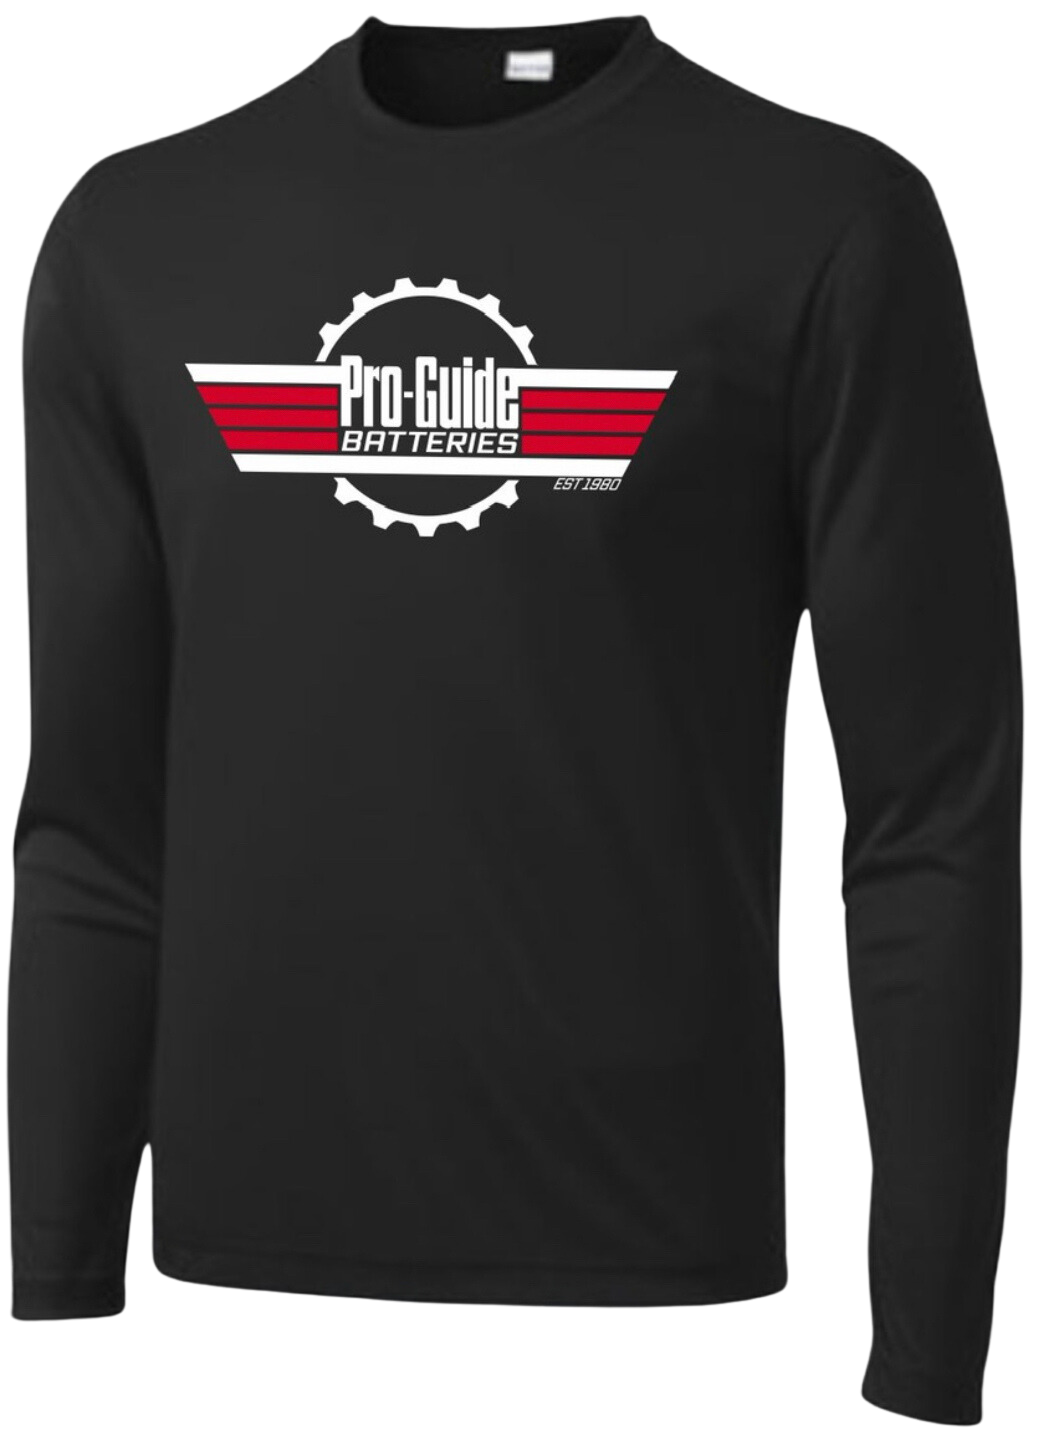 Pro-Guide "Top Gun" Long Sleeve Dri-Fit Shirt